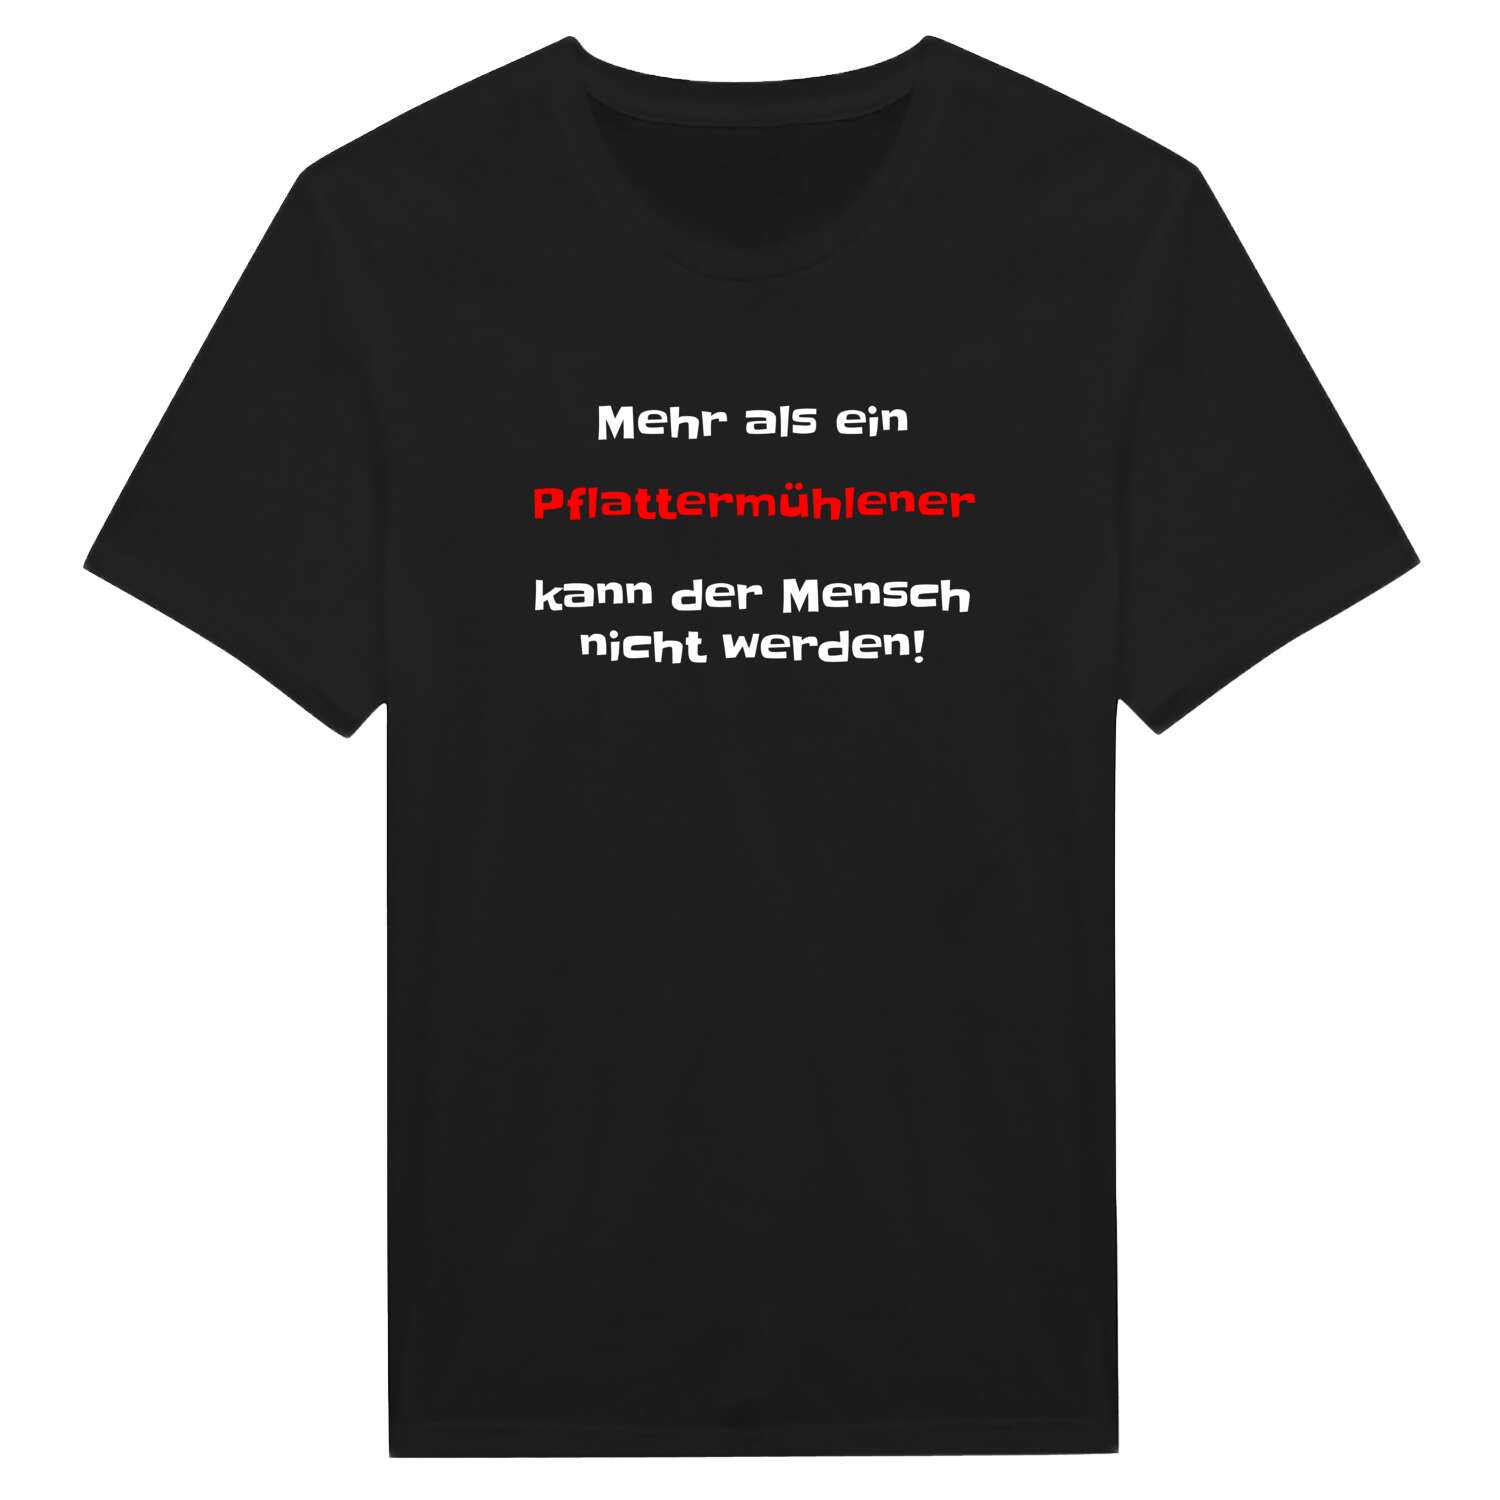 Pflattermühle T-Shirt »Mehr als ein«